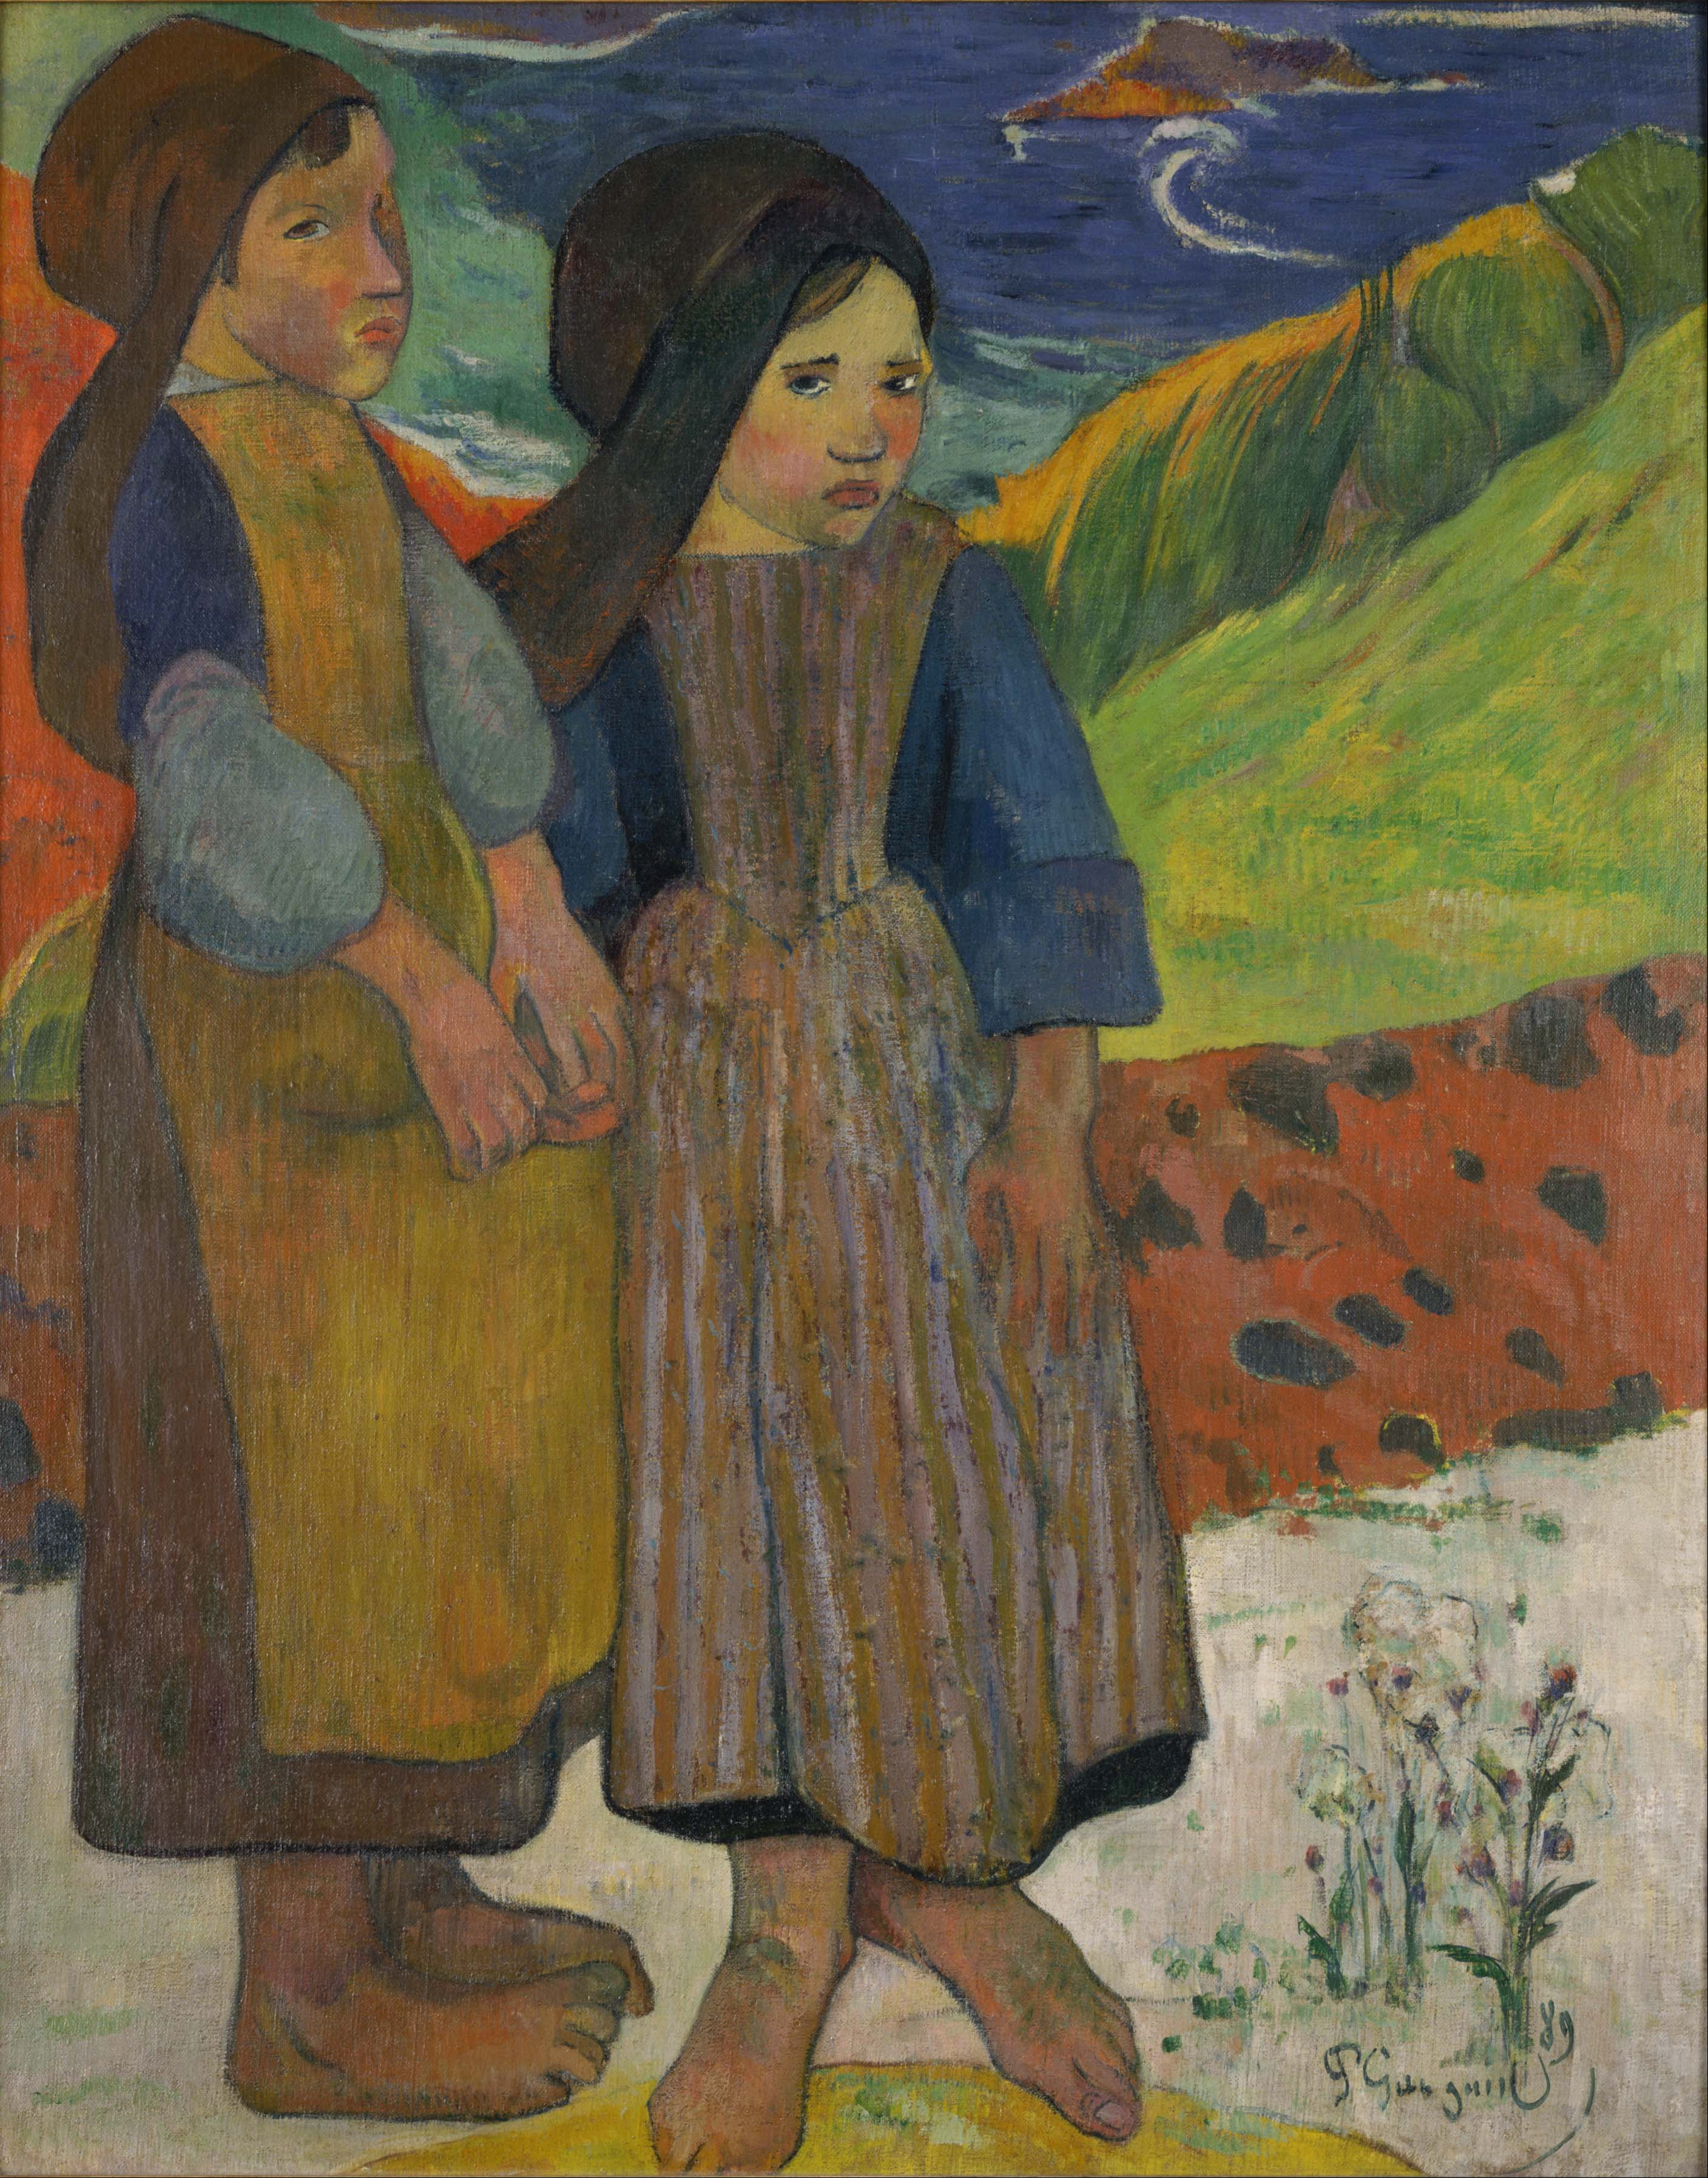 海辺に立つブルターニュの少女たち by Paul Gauguin - 1889年 - 73.6 x 92.5 cm 